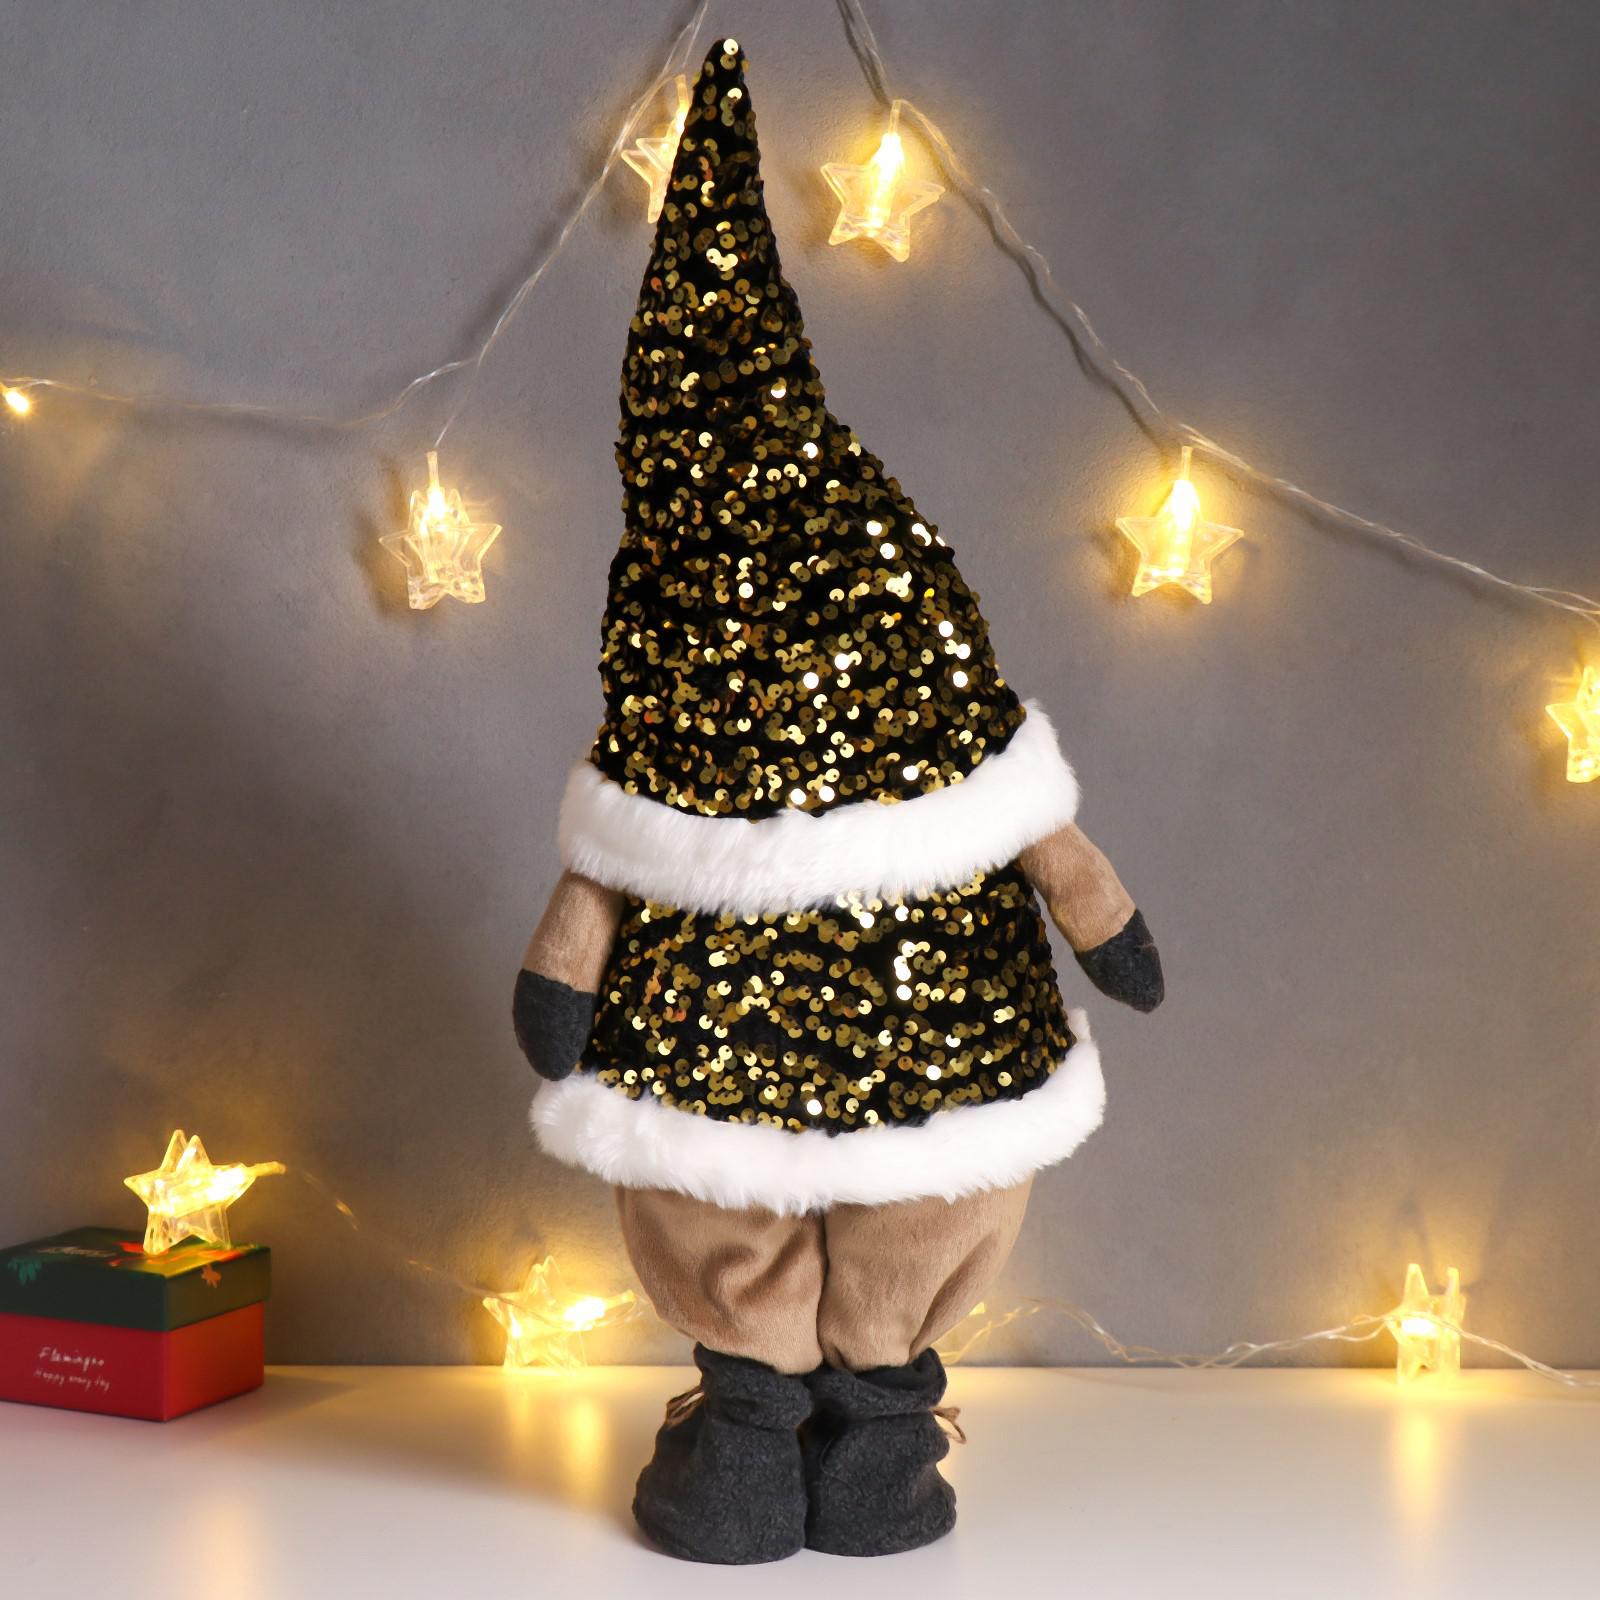 Кукла интерьерная Зимнее волшебство «Дед Мороз в золотом колпаке и жилетке с пайетками» 55х16х22 см - фото 3